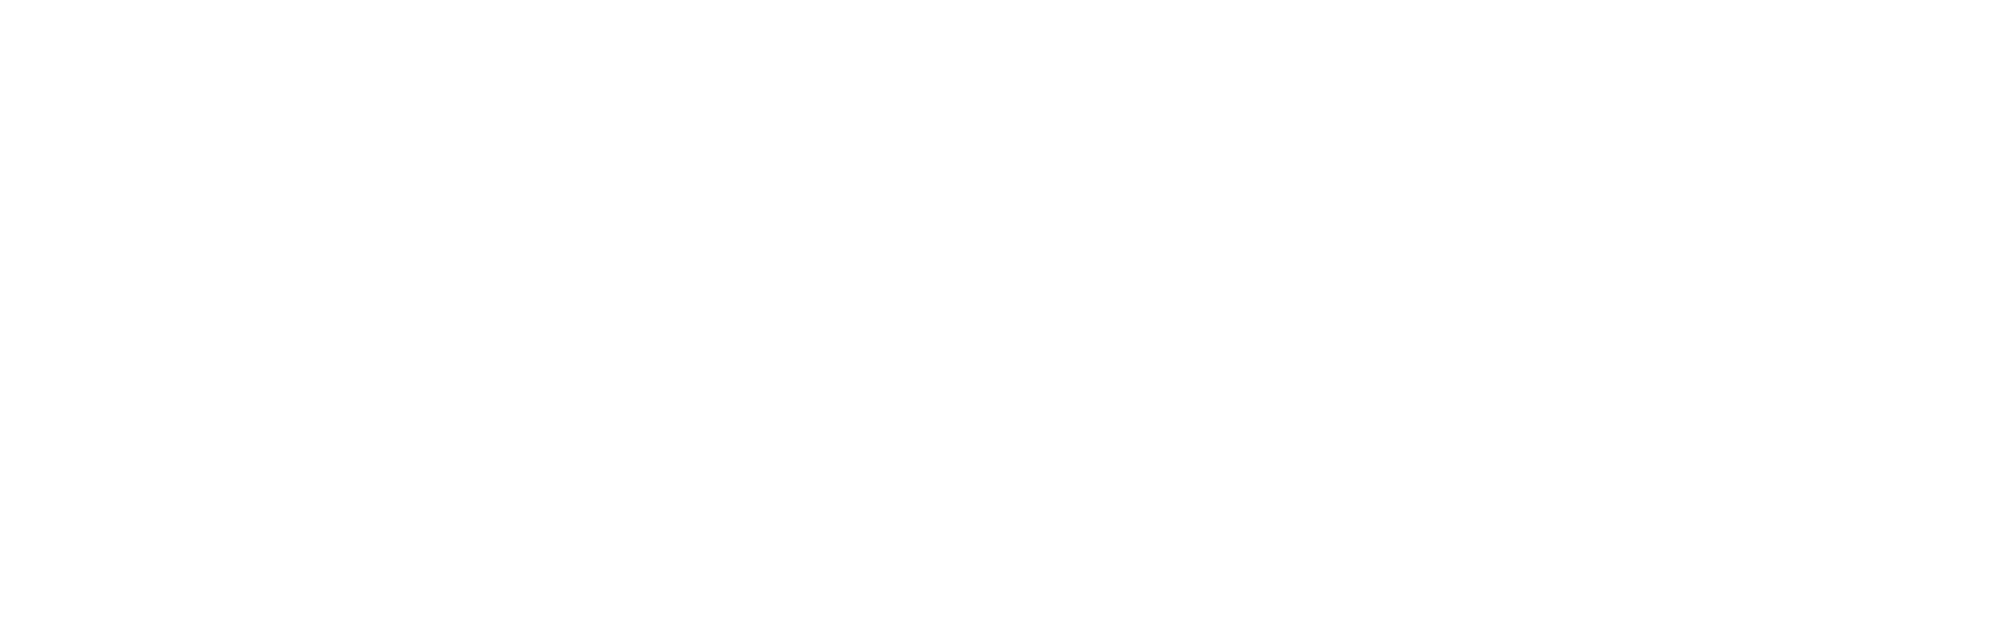 Gizlilik Politikası - Leather harmonica - Premium handmade leather goods